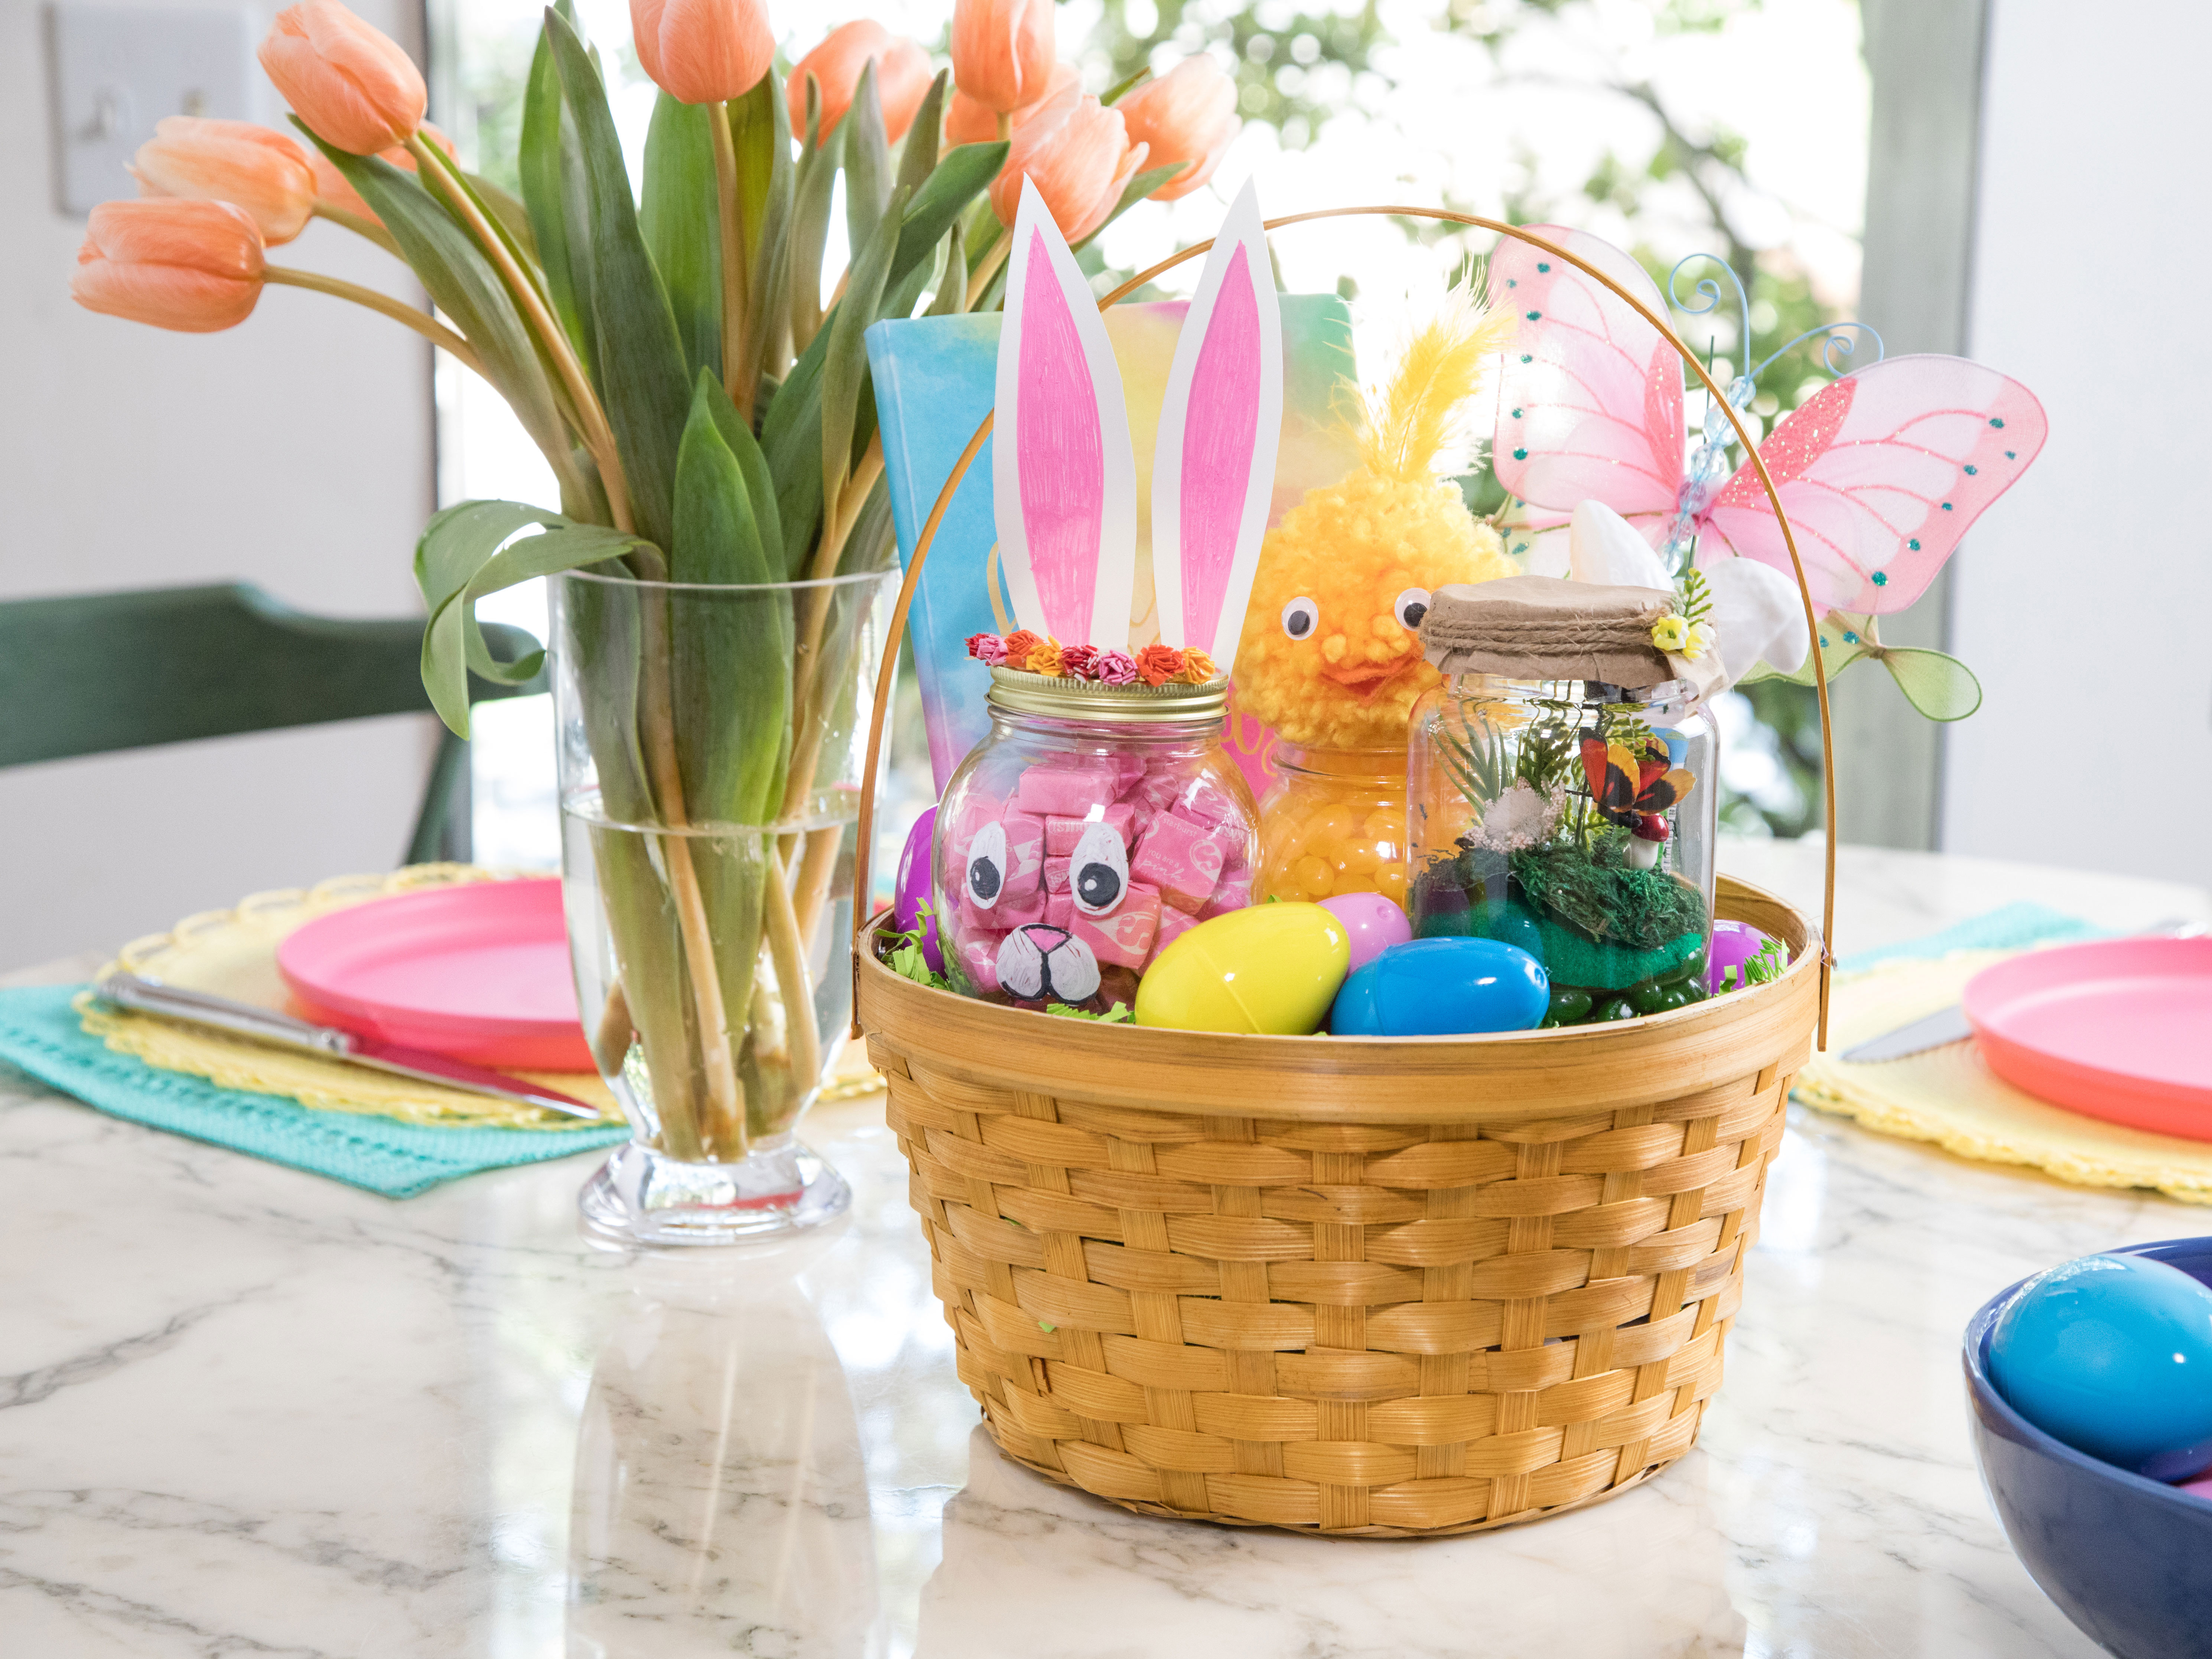 Easter Basket Wreath Bowl Crafts Filler Home Decor Details about   12 Speckled Pastel Eggs 